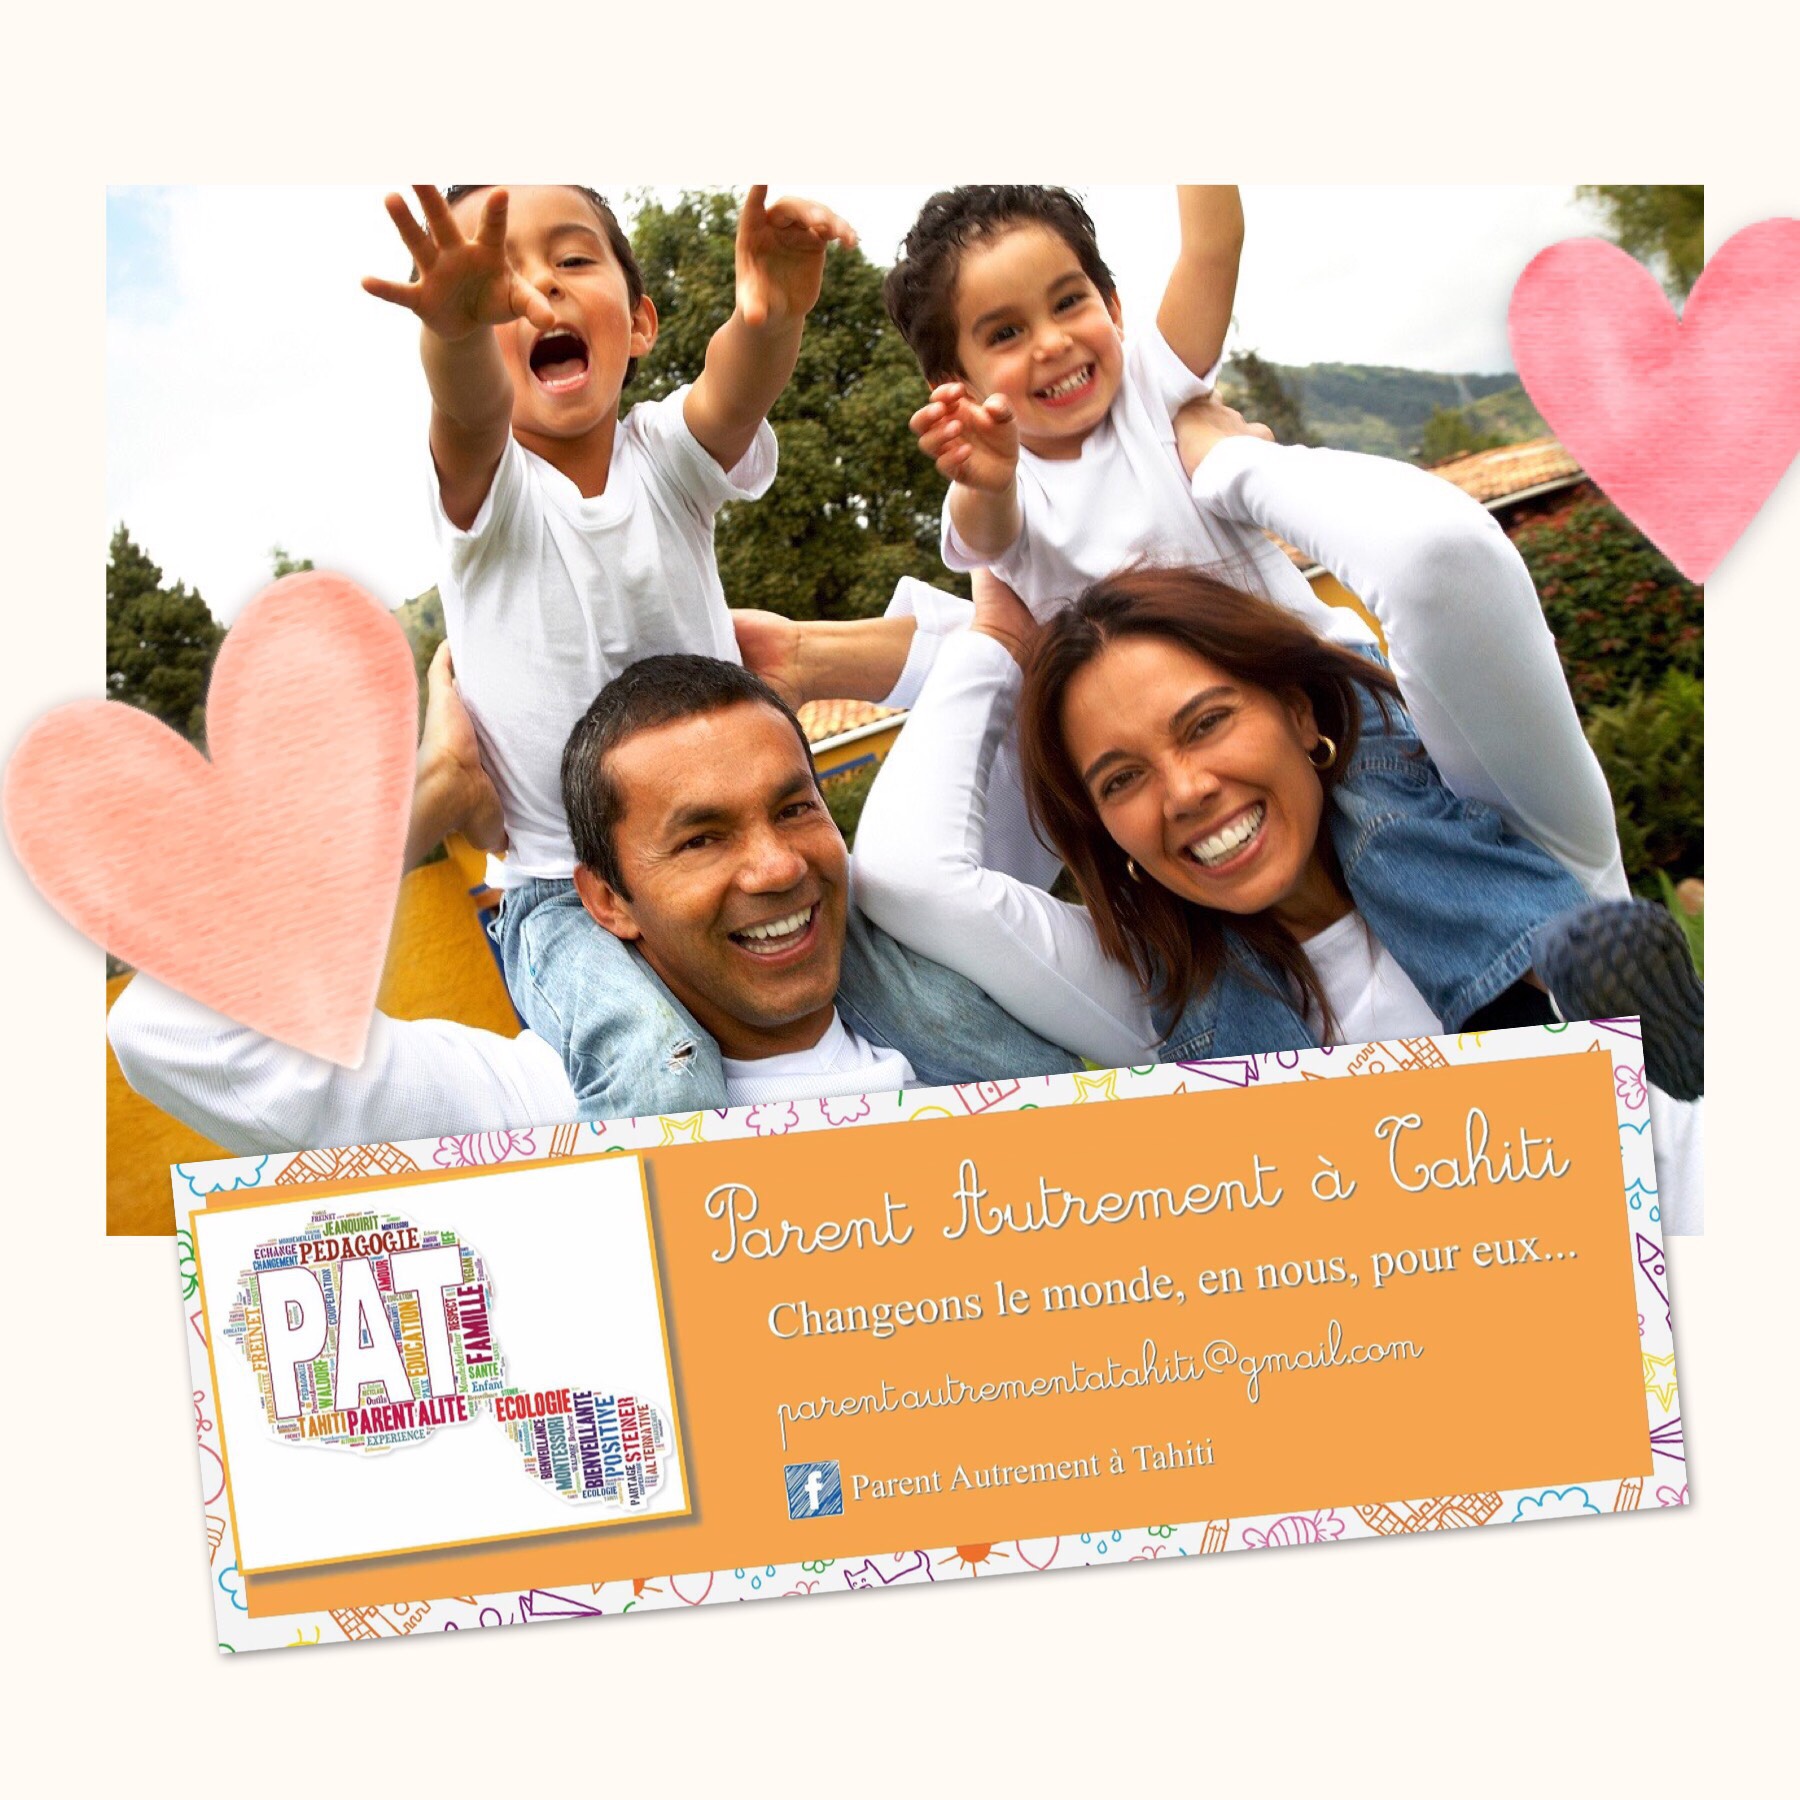 La devise de l'association PAT : parent autrement à Tahiti est : "Changeons le monde, en nous, pour eux ".Crédit PAT.